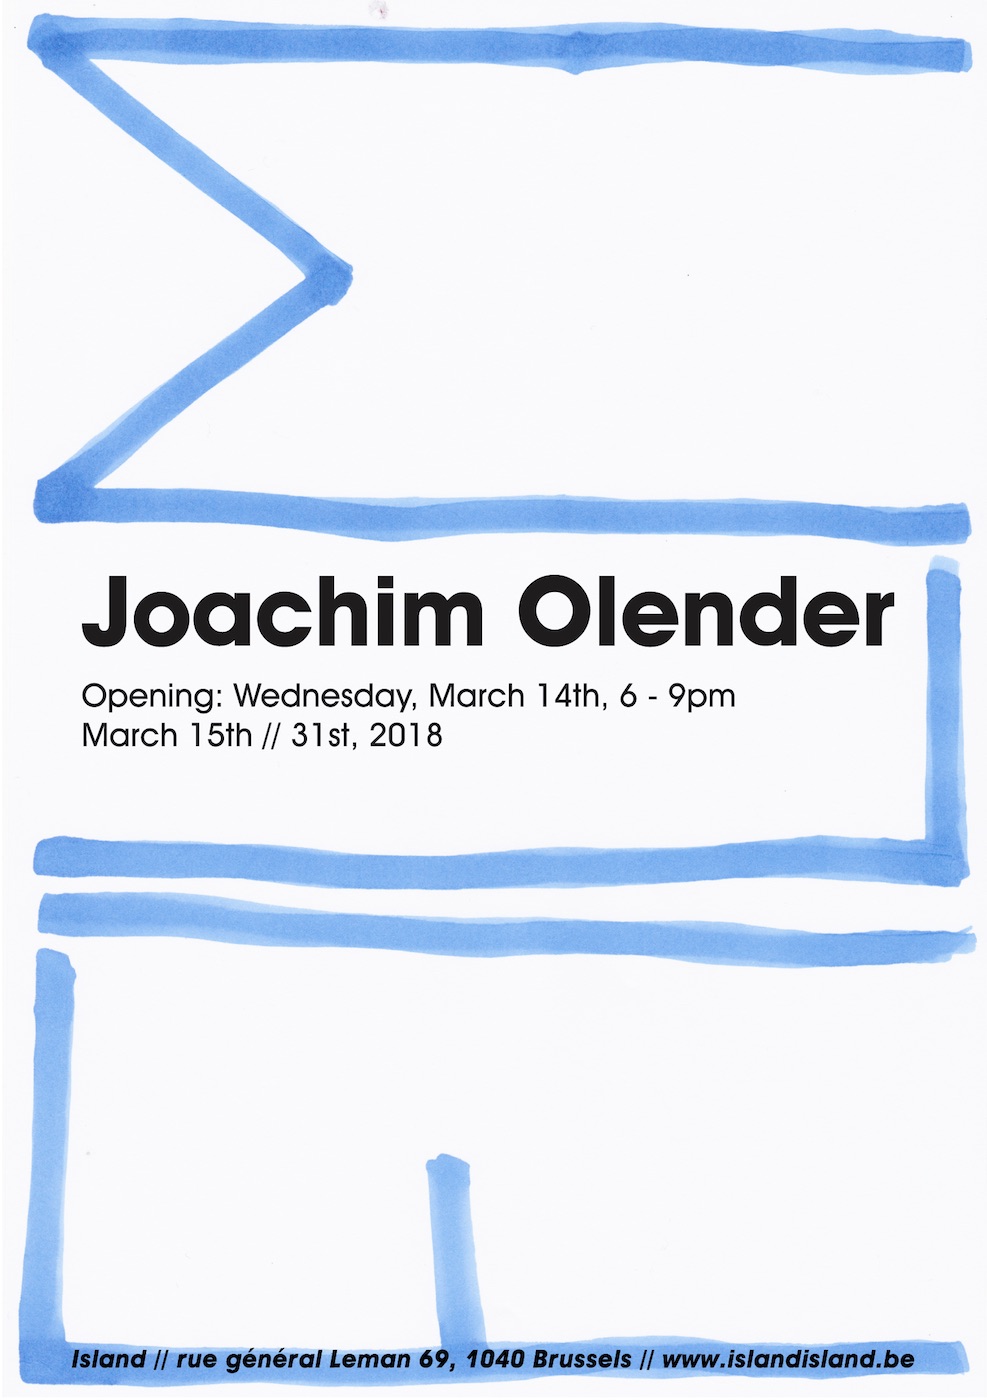 Joachim Olender